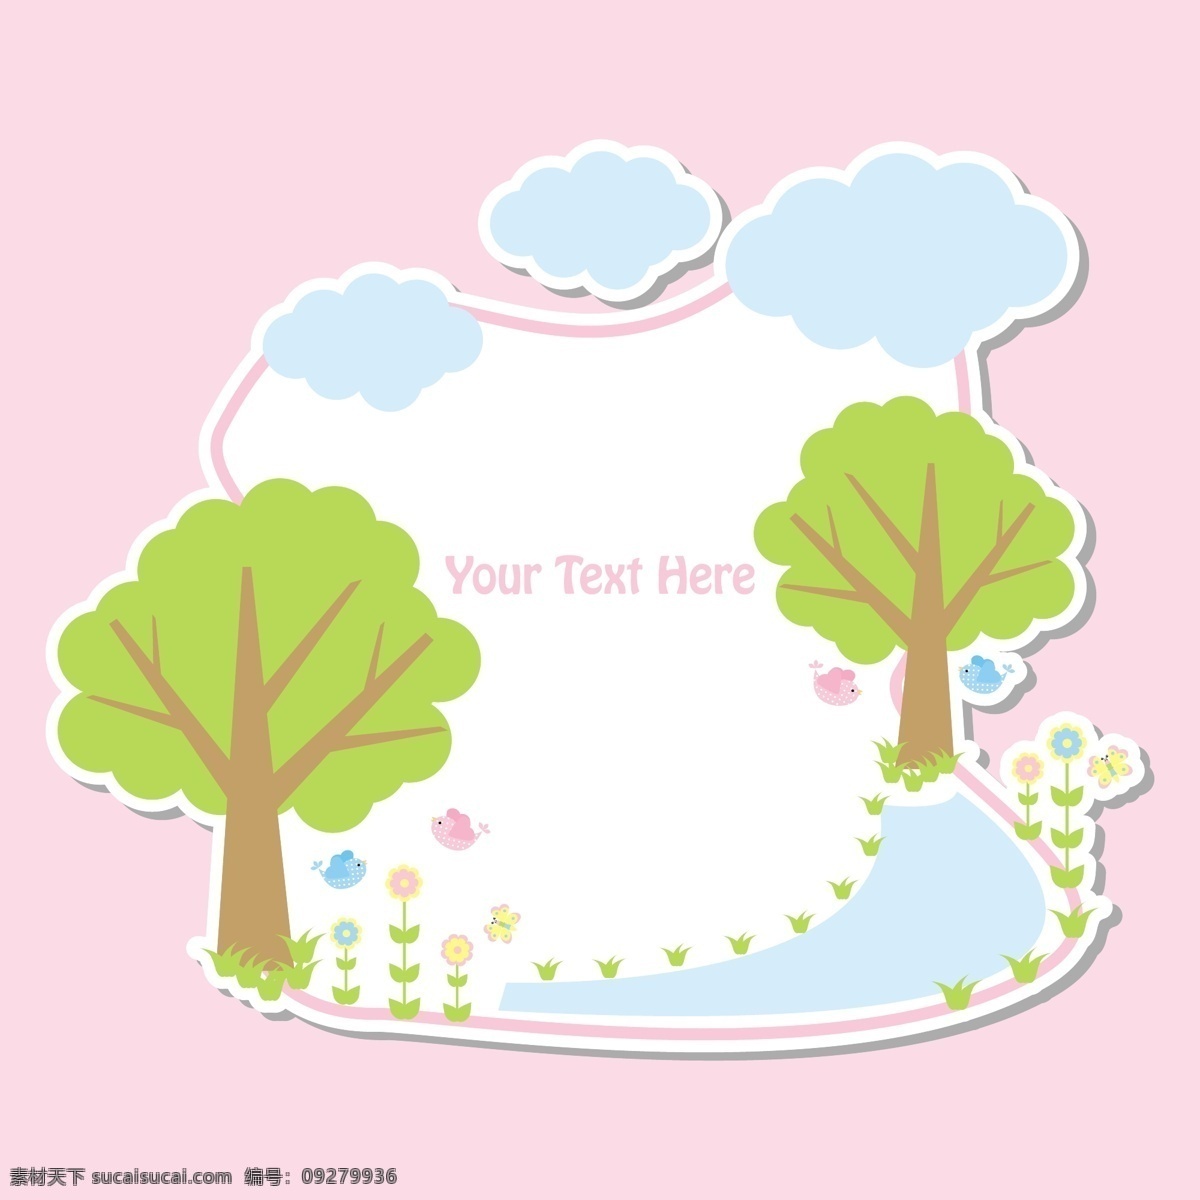 幼儿 风格 可爱 绿树 鲜花 云朵 装饰 粉红色 背景 幼儿风格 可爱绿树 粉红色背景